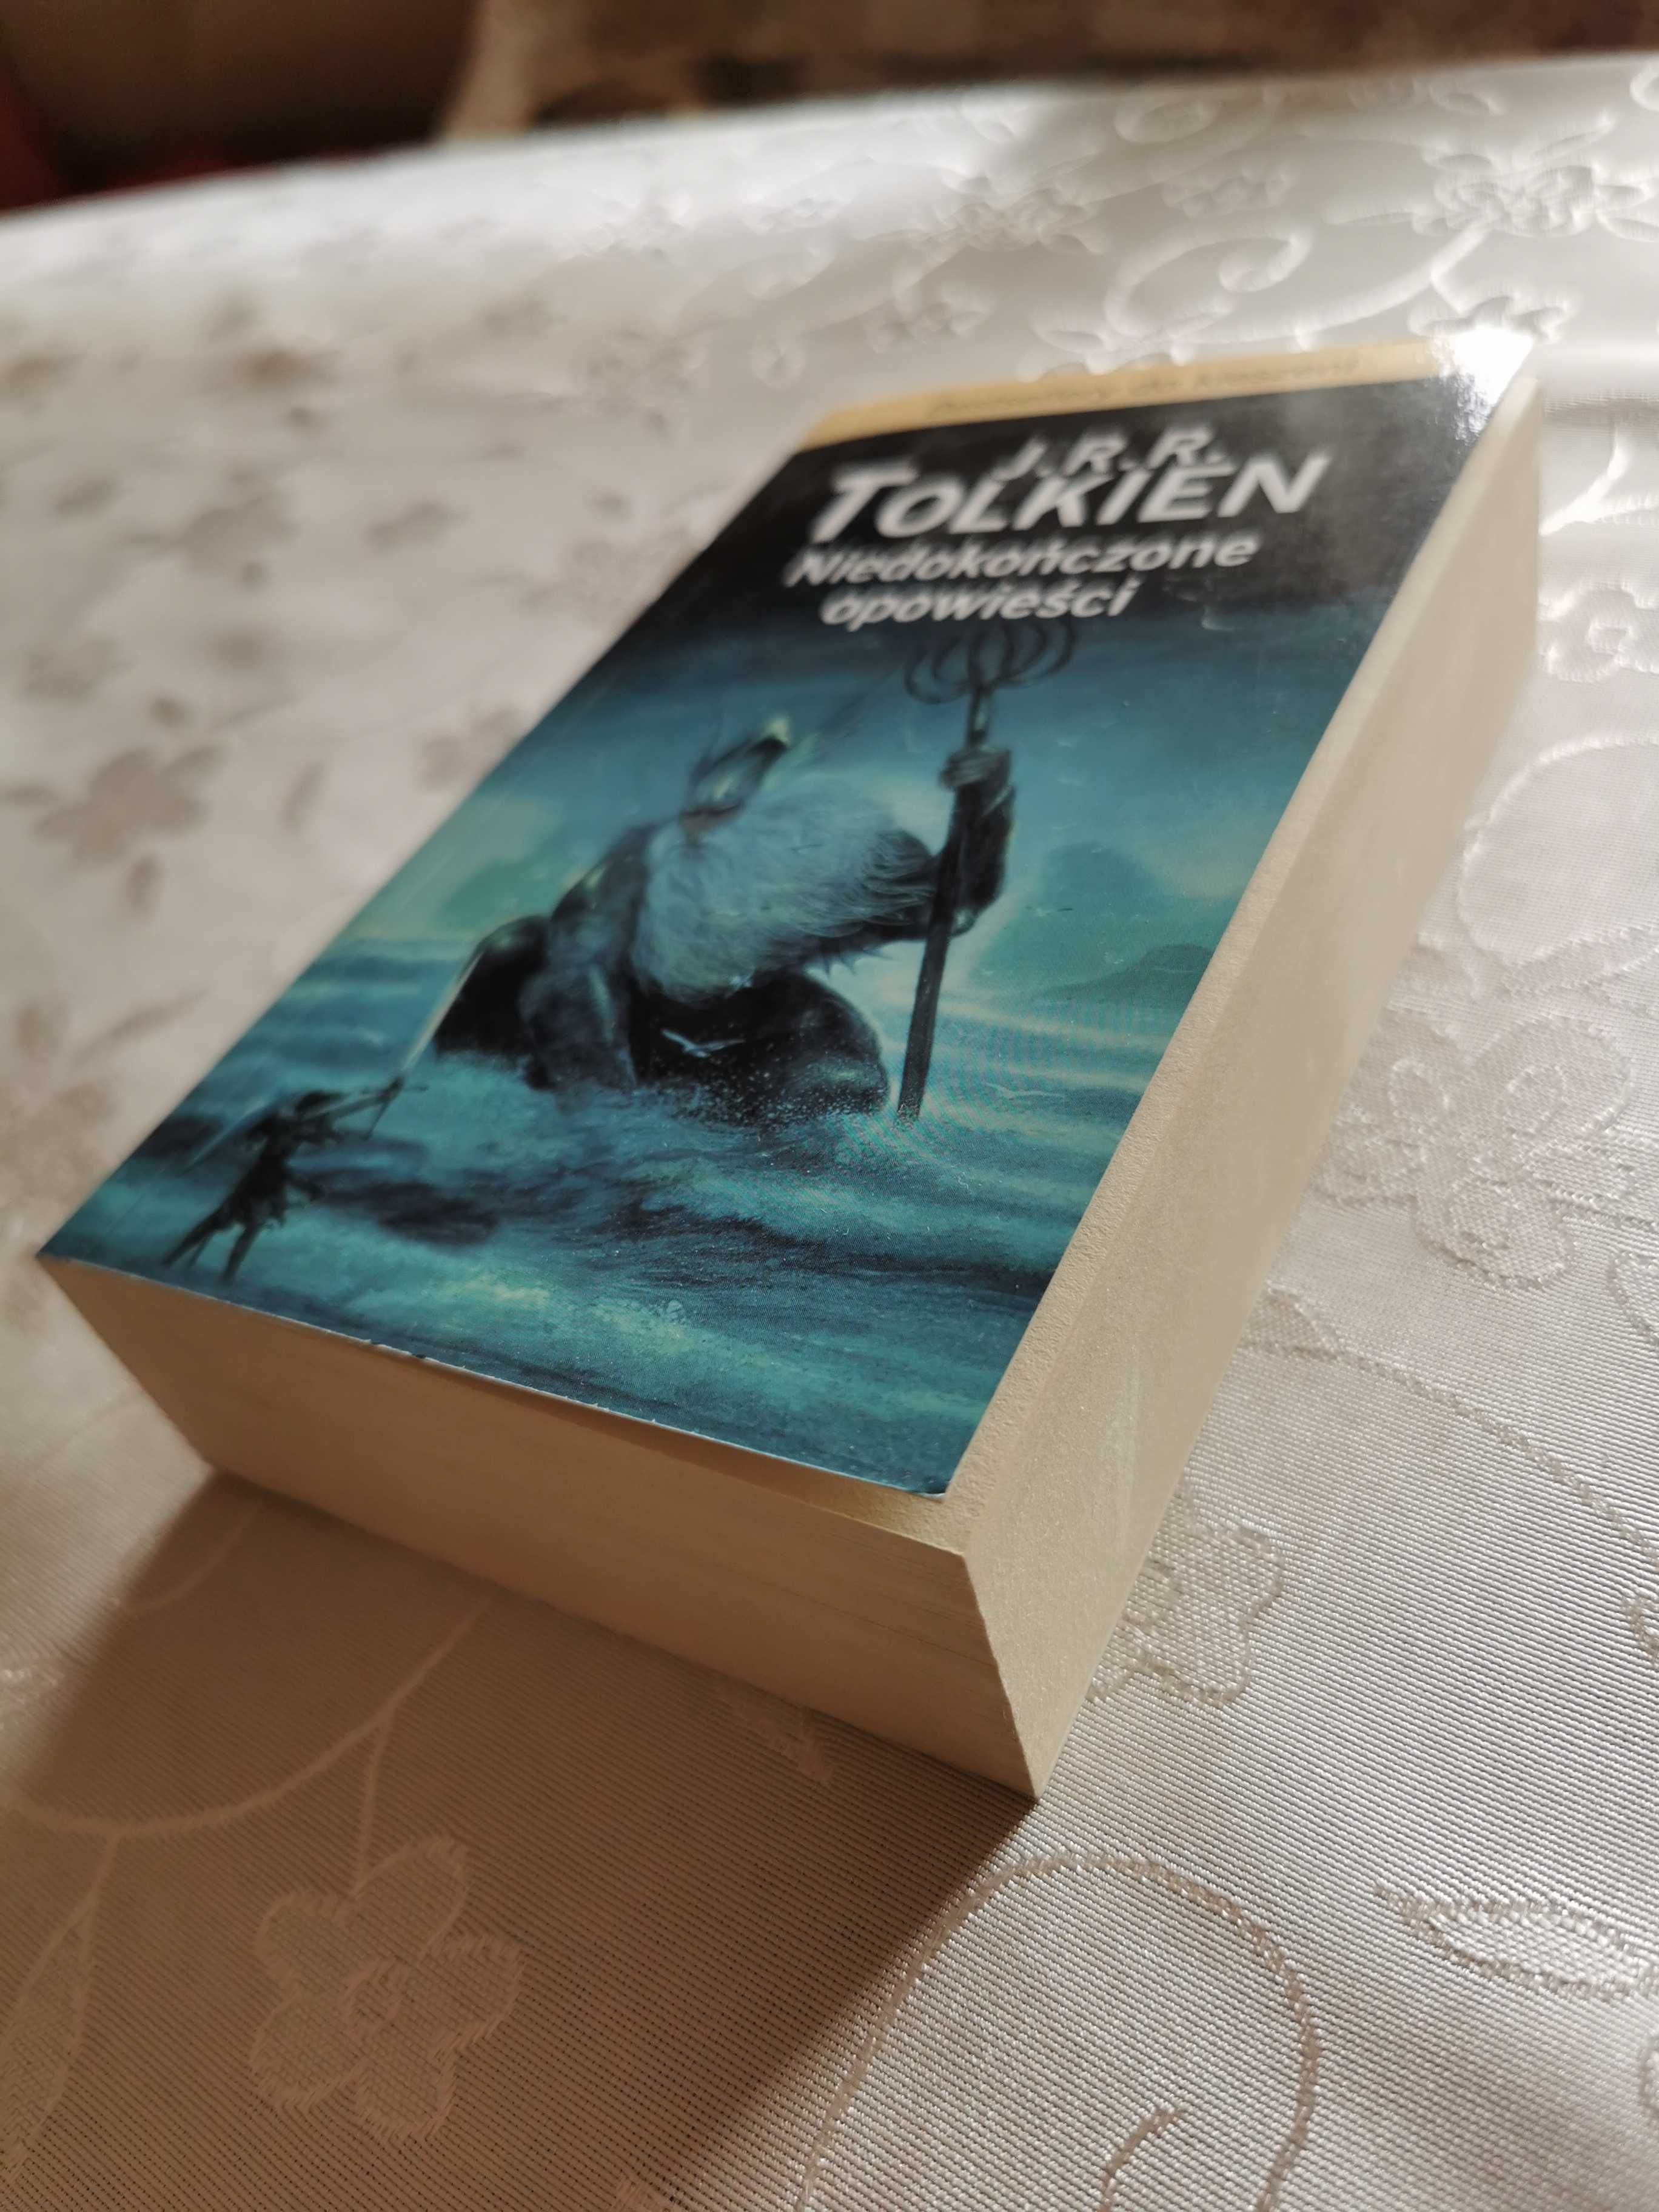 Książka "Niedokończone opowieści" J. R. R. Tolkien